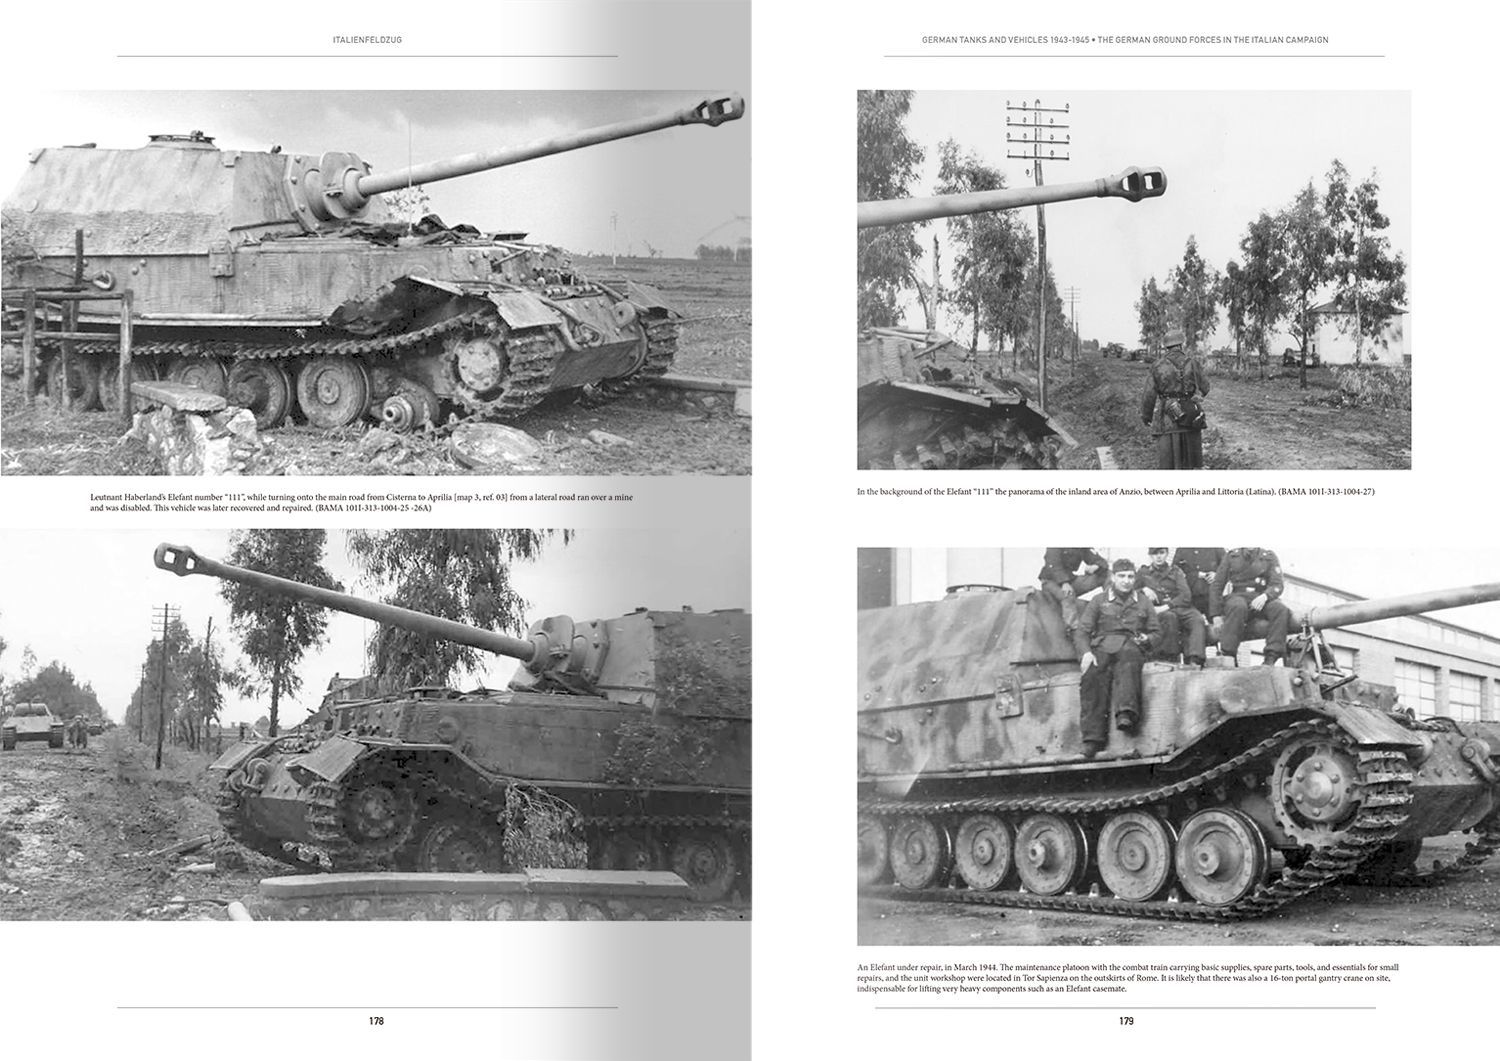 Ammo書籍 Amig6261 書籍 イタリア戦線 ドイツ軍戦闘車輌1943 1945 Vol 1 M S Models Web Shop